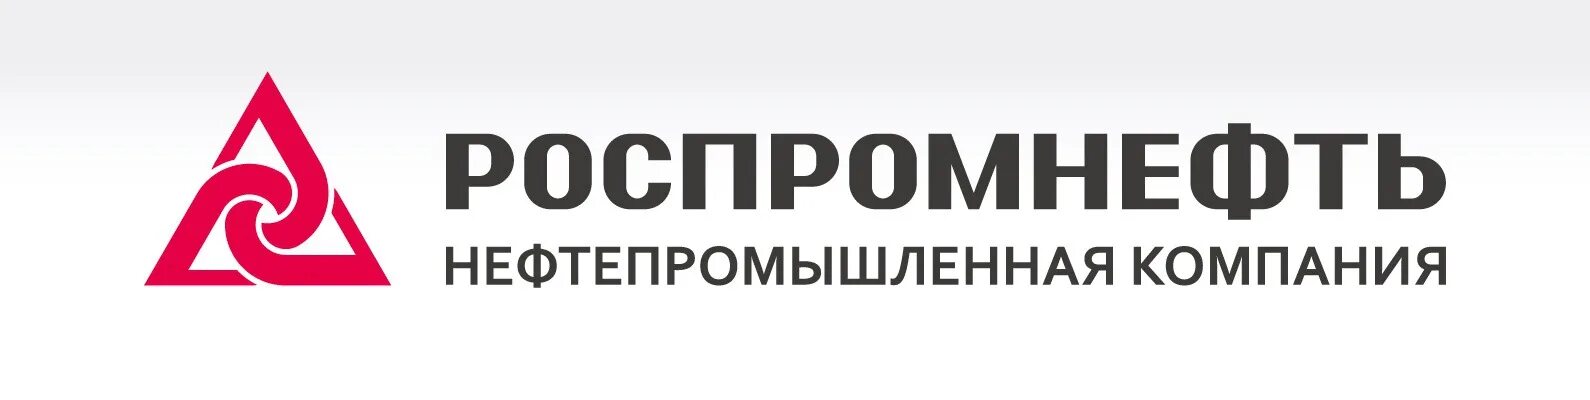 Московская акционерная компания. Нефтепромышленная компания. Логотип нефтепромышленные компании. АО новая перевозочная компания. Безопасность в нефтепромышленной.